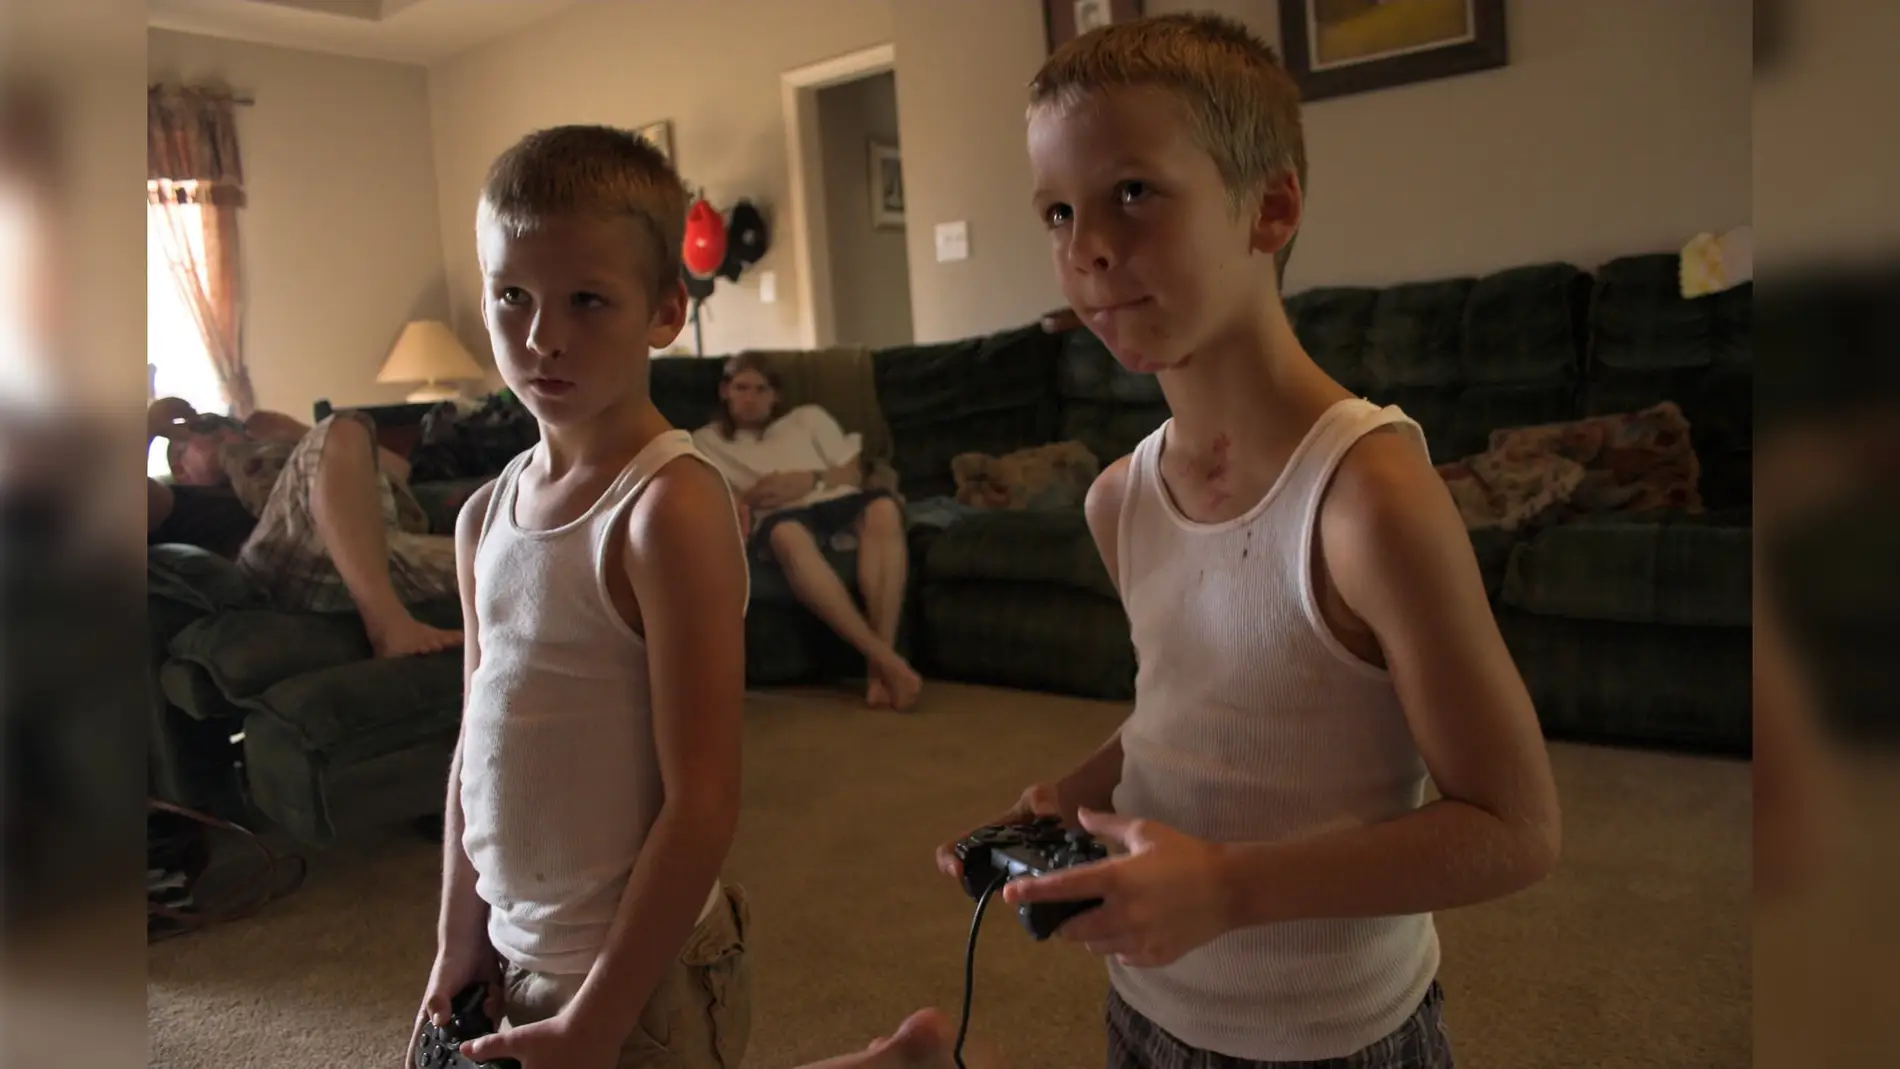 Hijos jugando a videojuegos